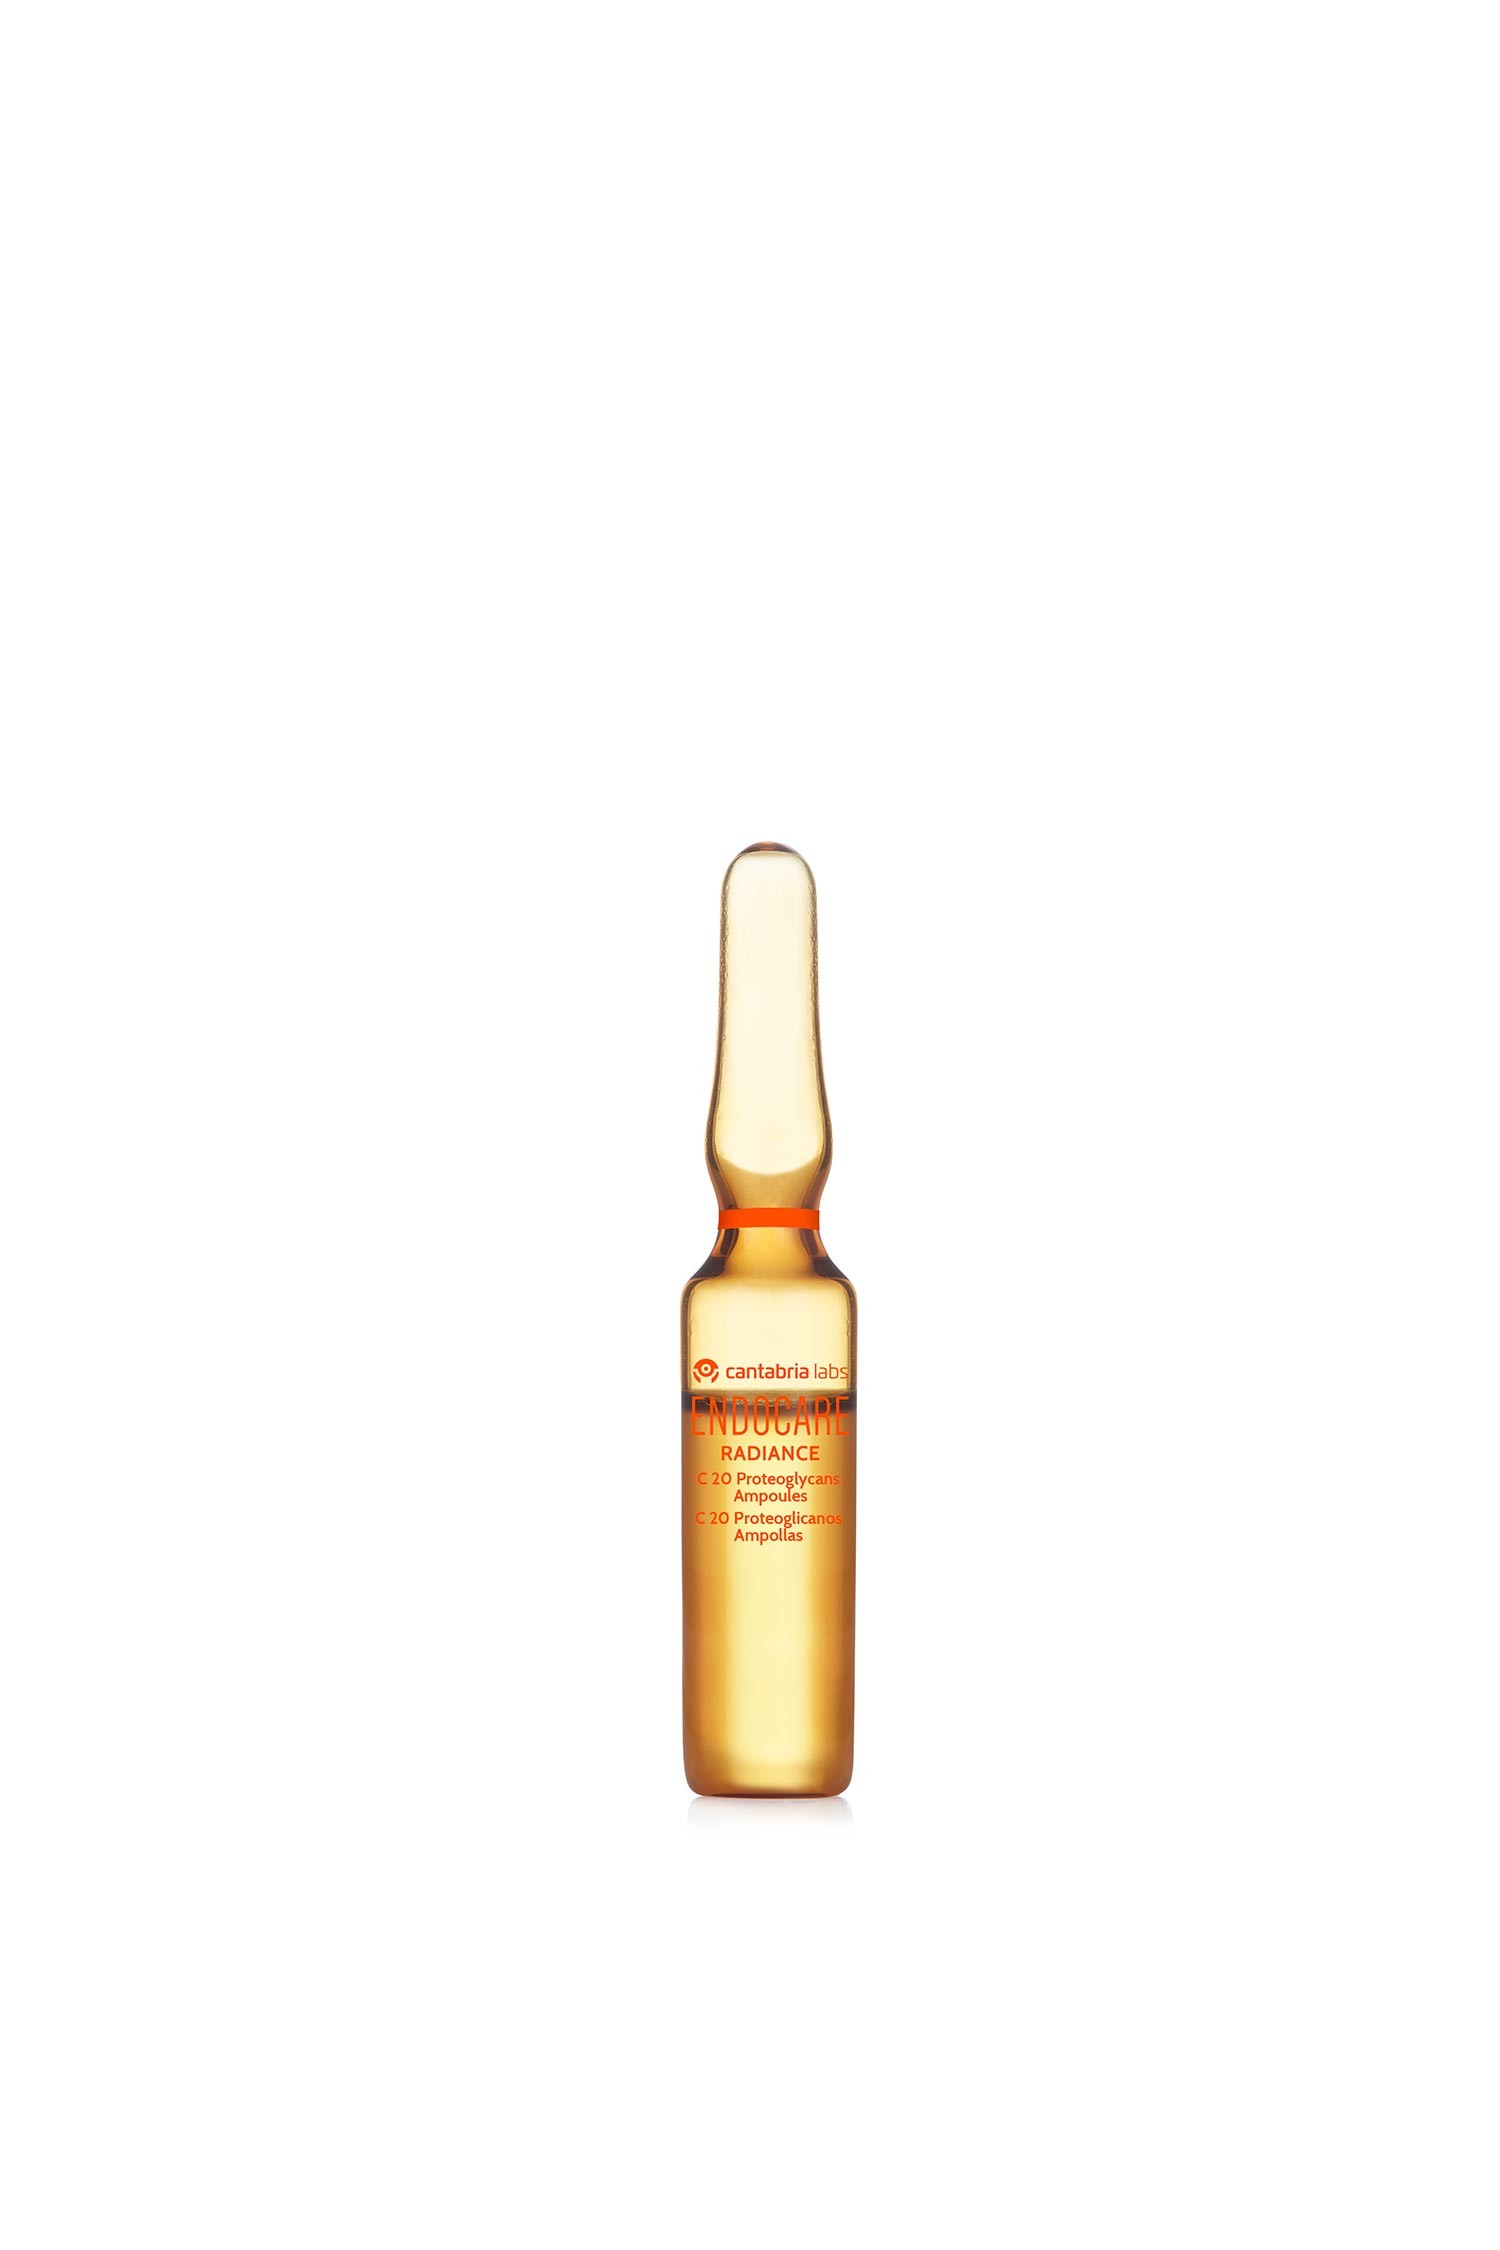 Endocare Radiance C 20 proteoglicanos, 30 ampollas